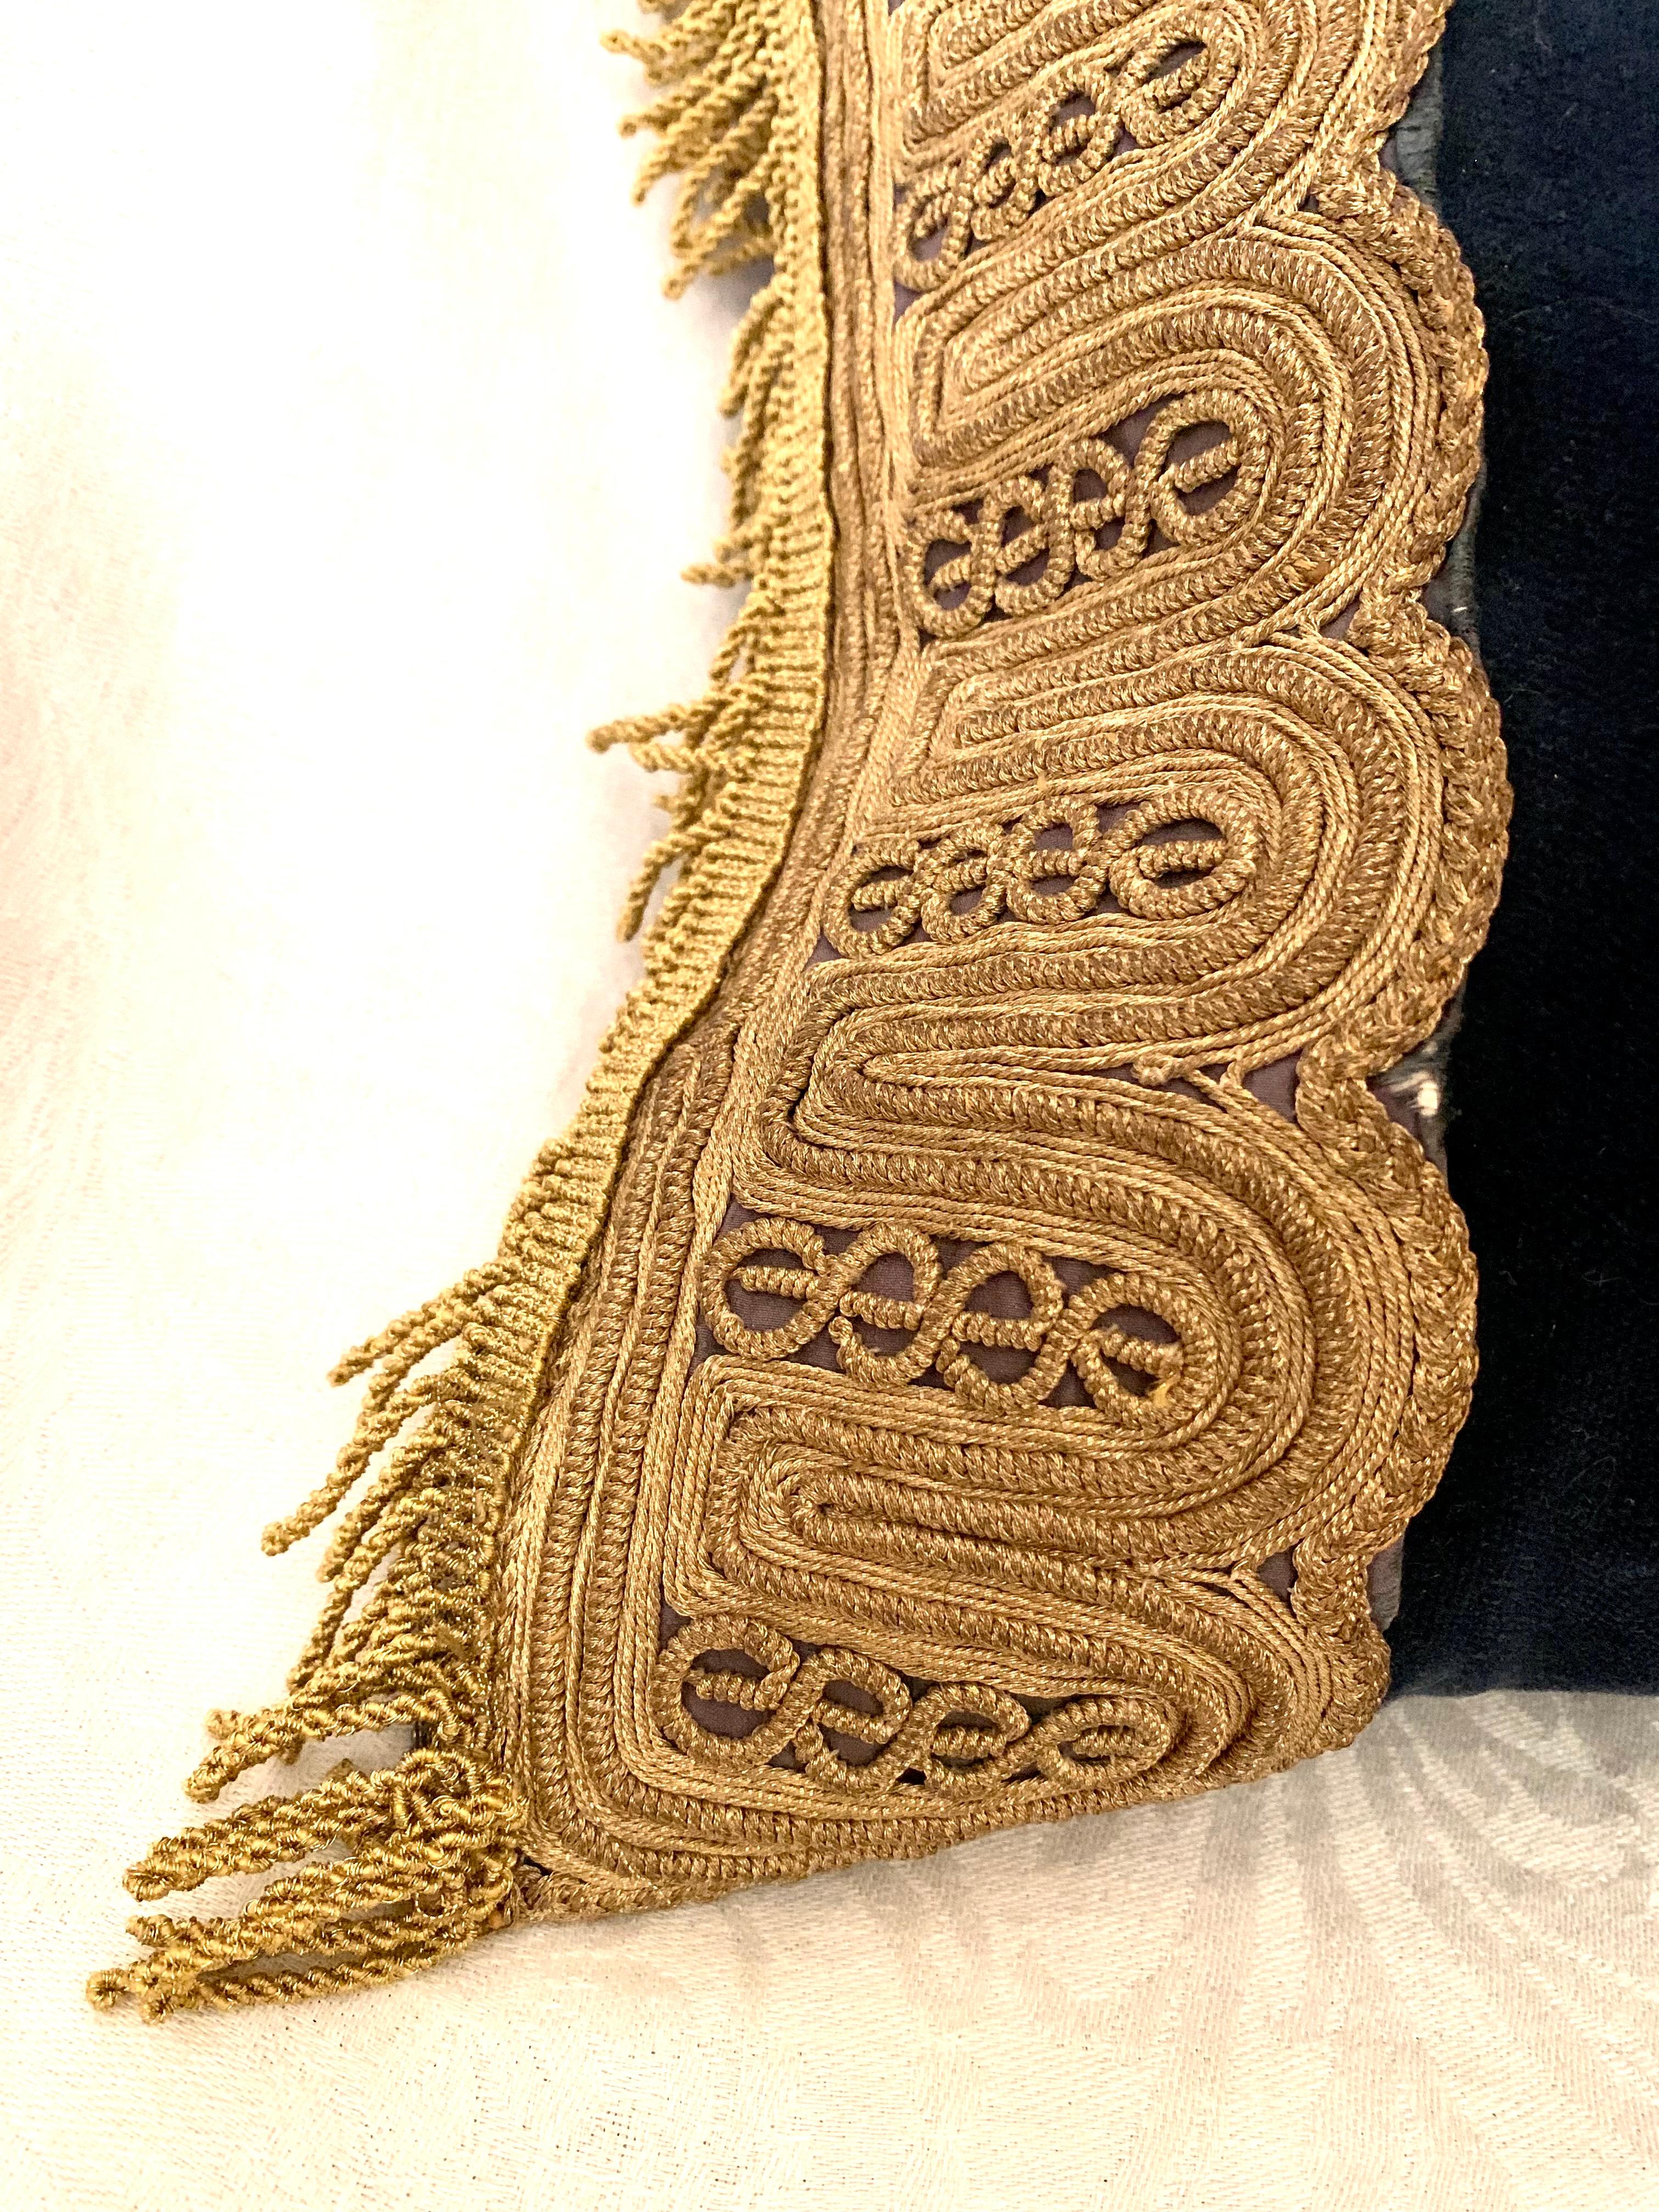 Coussin ancien brodé à la main en fil d'or métallique et velours bleu. Travail très fin et détaillé sur la broderie en or en forme d'arcs multiples et continus. La broderie date du XIXe siècle. Elle a été conçue comme un oreiller en velours bleu fin